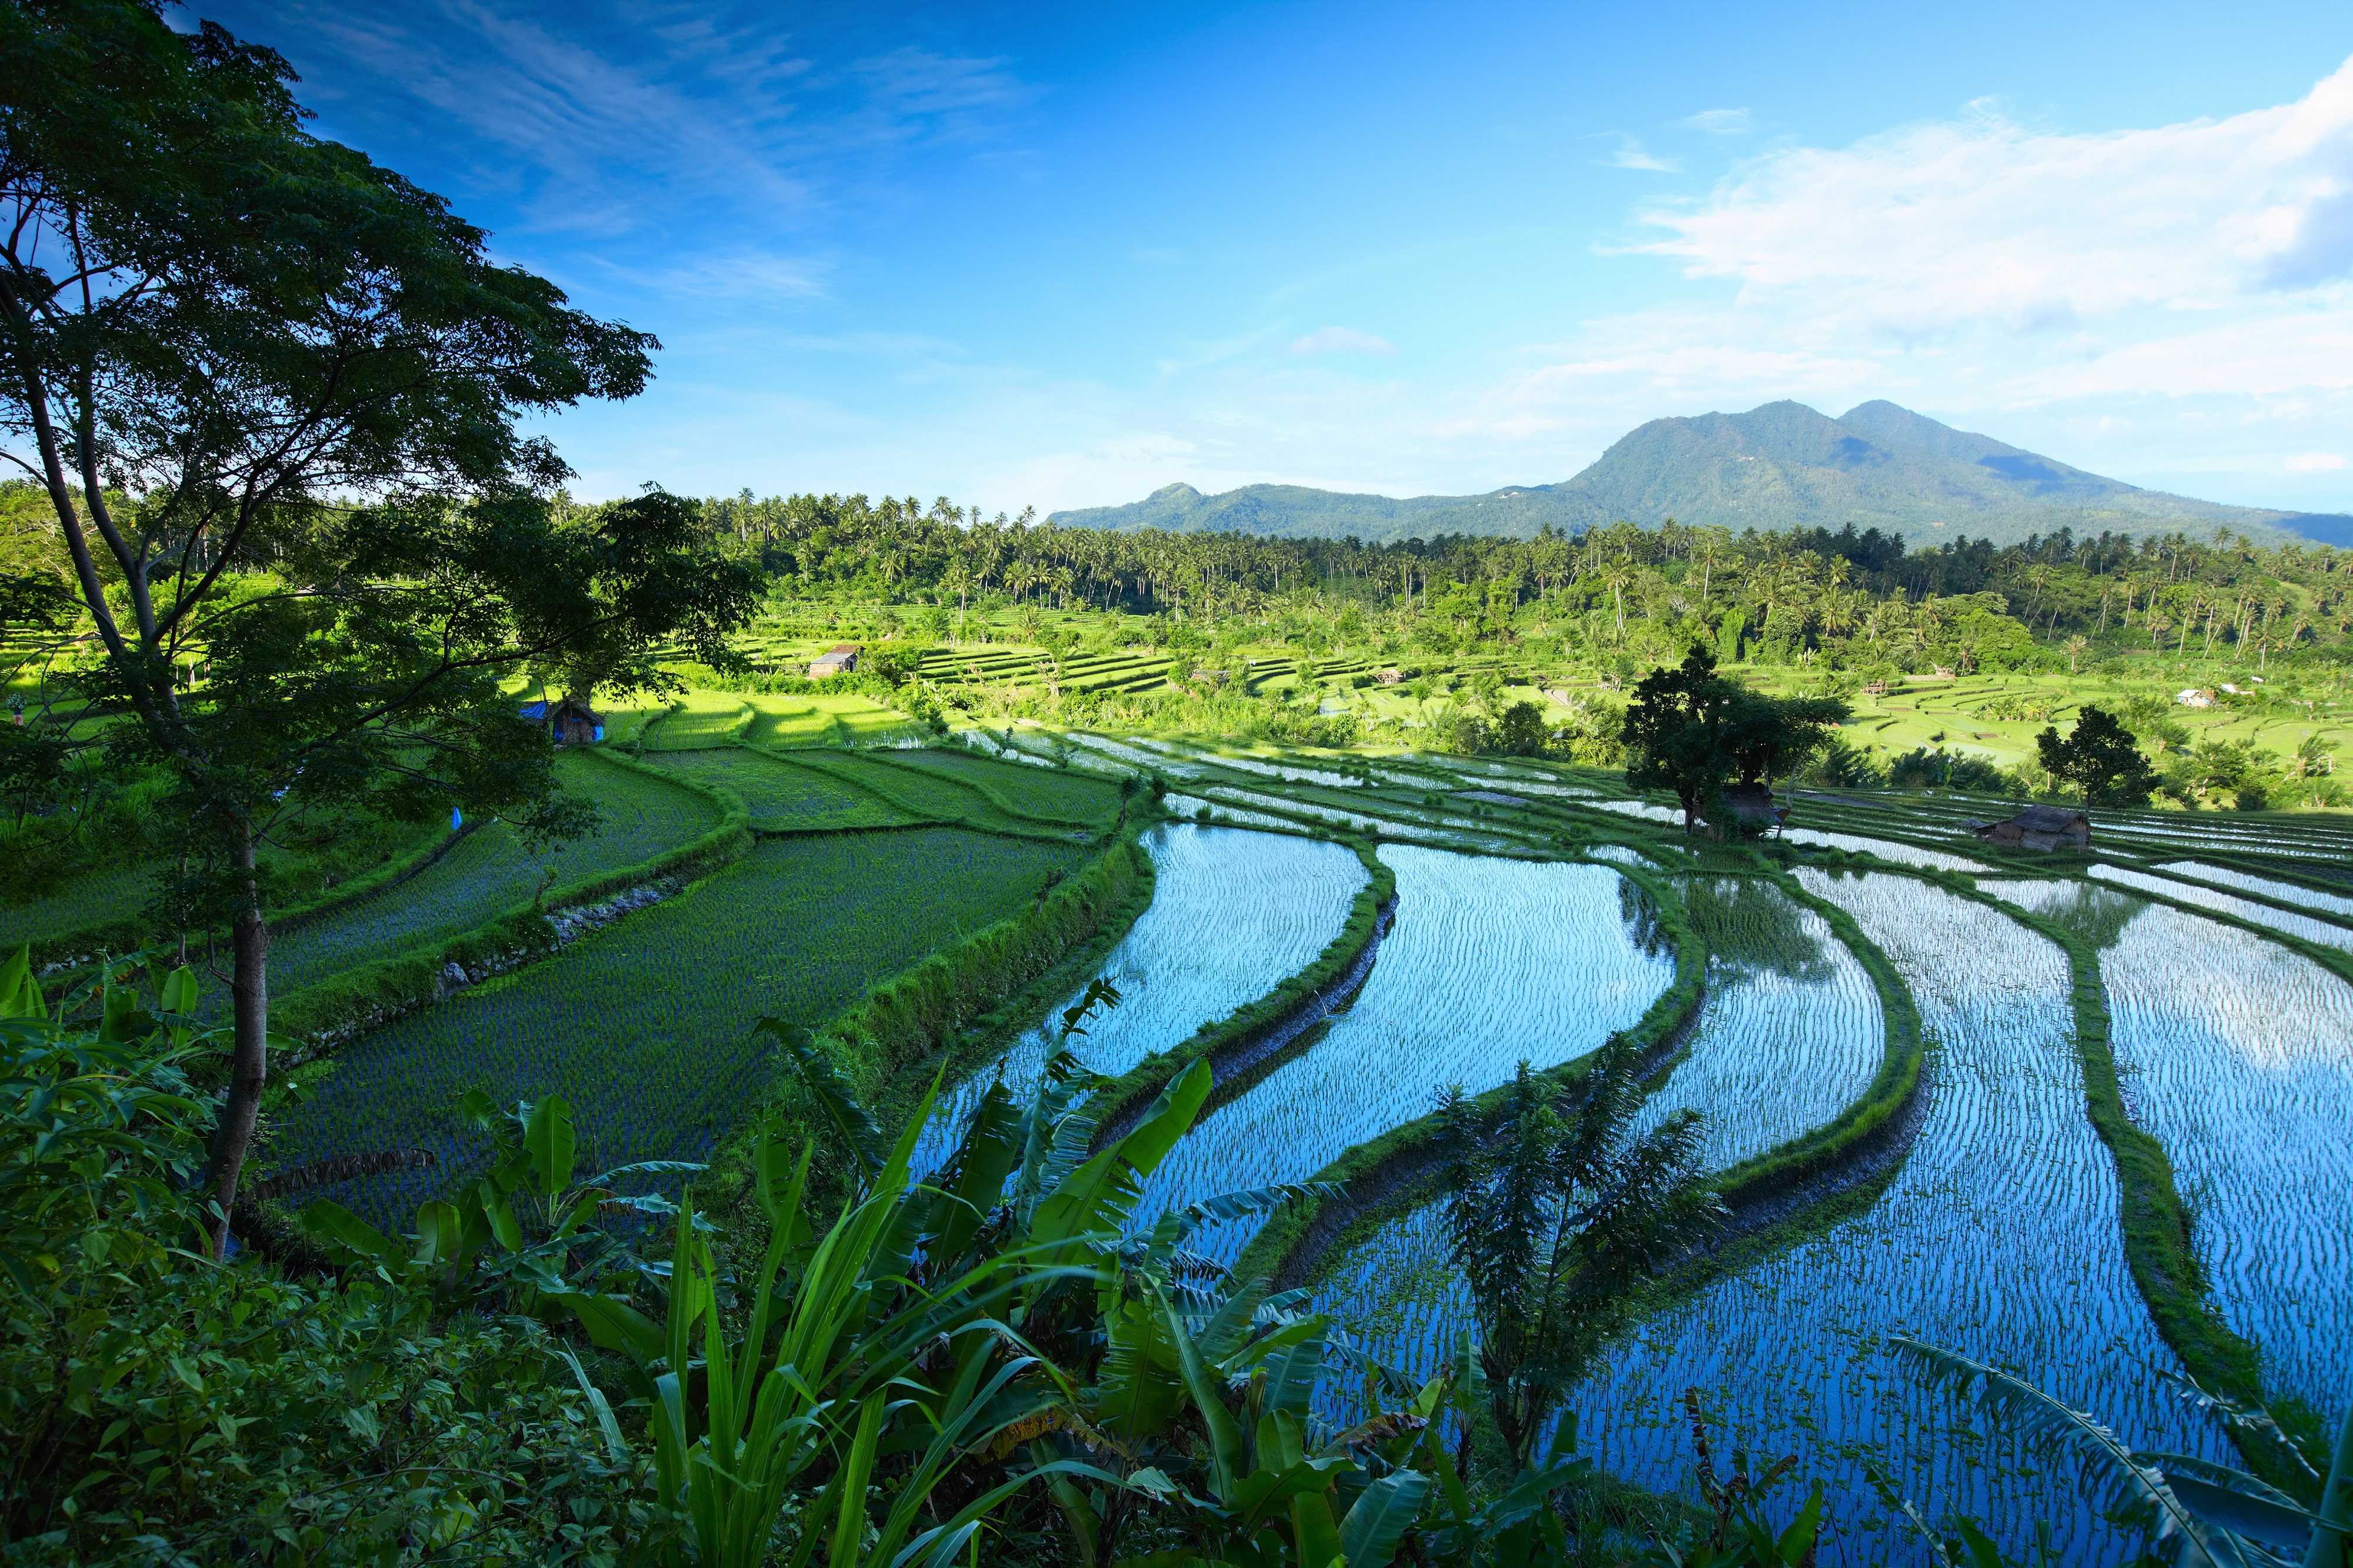 Vert fluo des rizières, vert profond des forêts, volcans majestueux en arrière-plan : bienvenue à Bali !